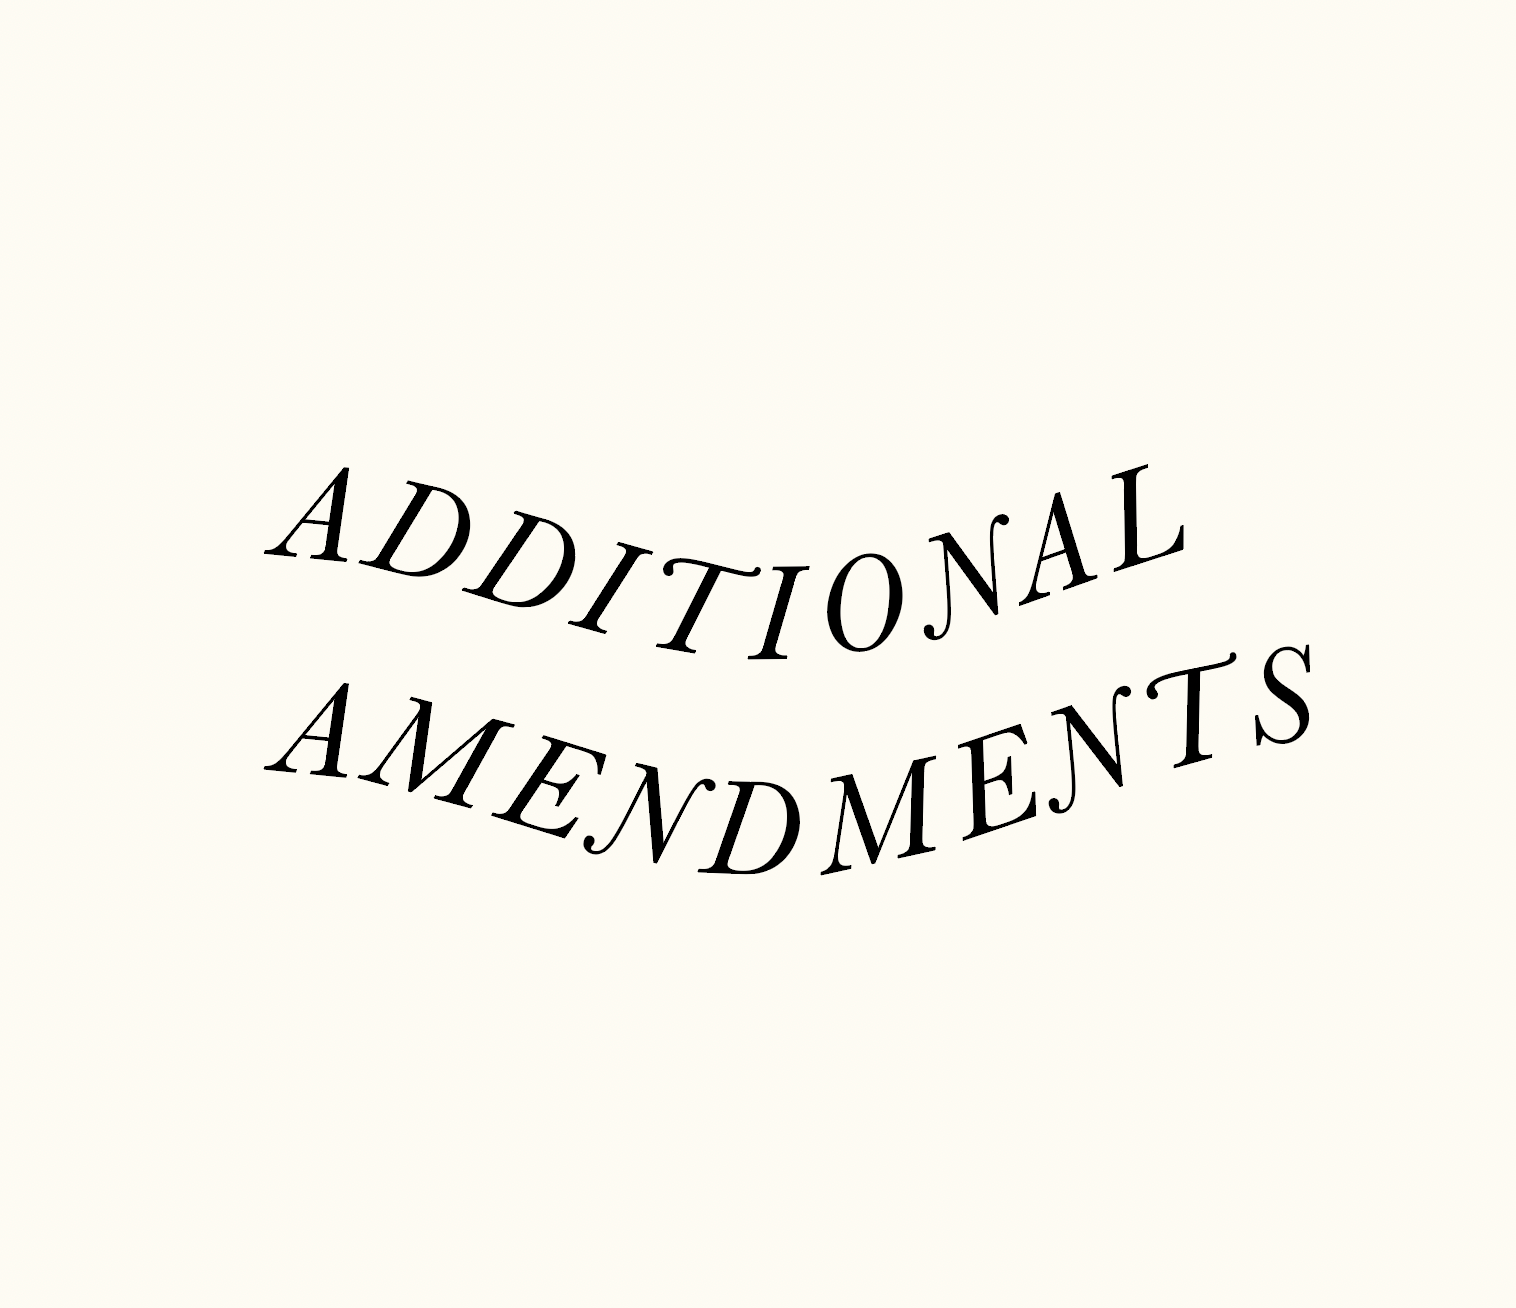 Additional Amendments